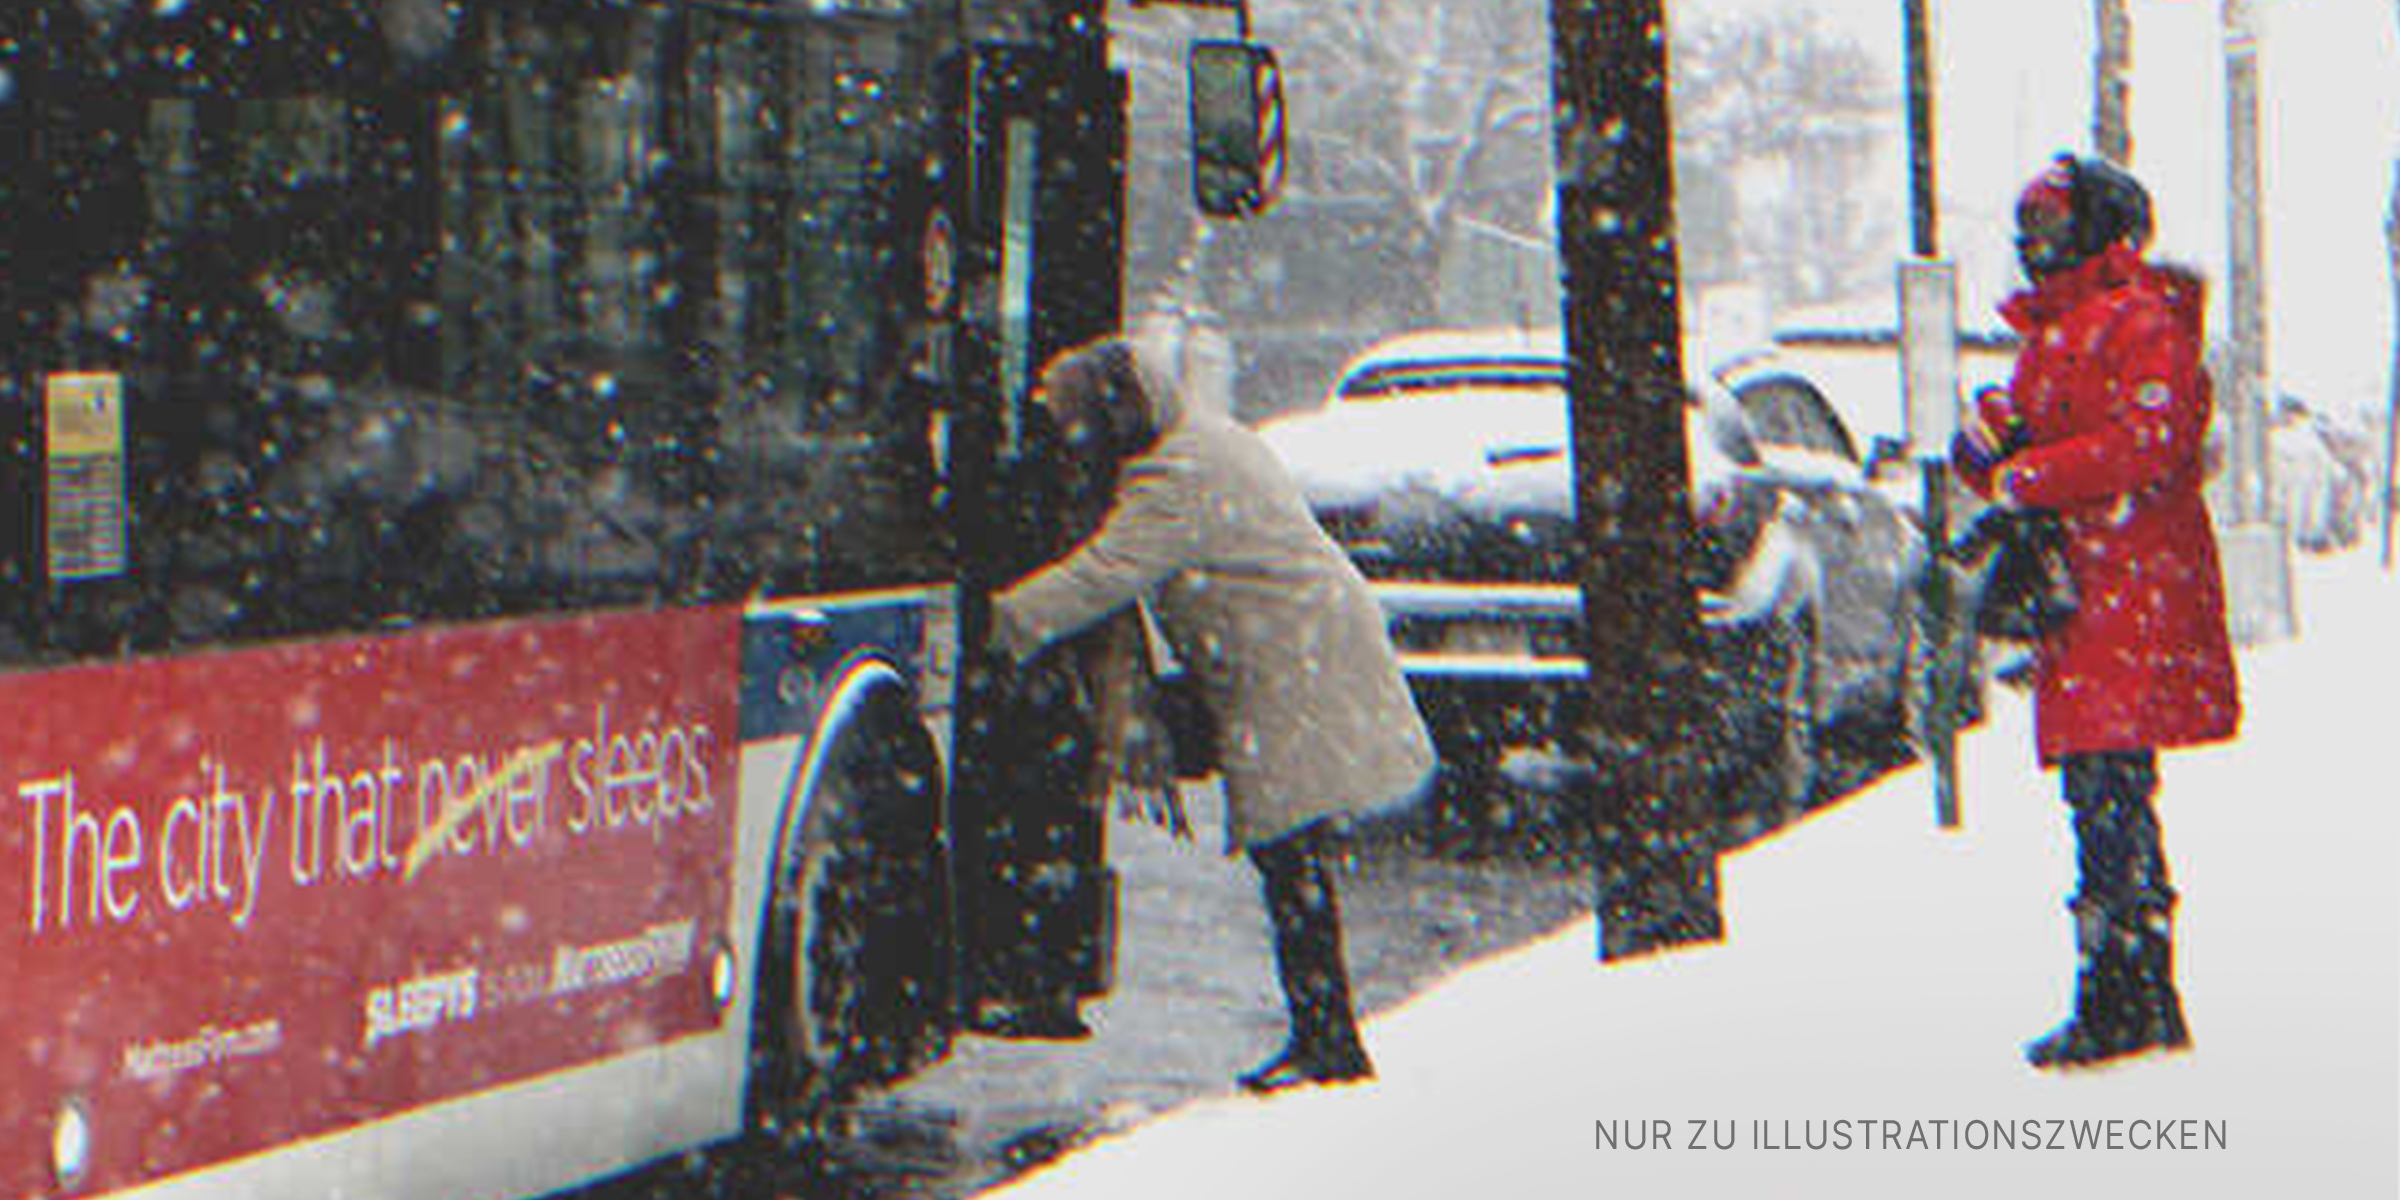 Zwei Personen stehen im Schnee neben einem Bus | Quelle: Shutterstock